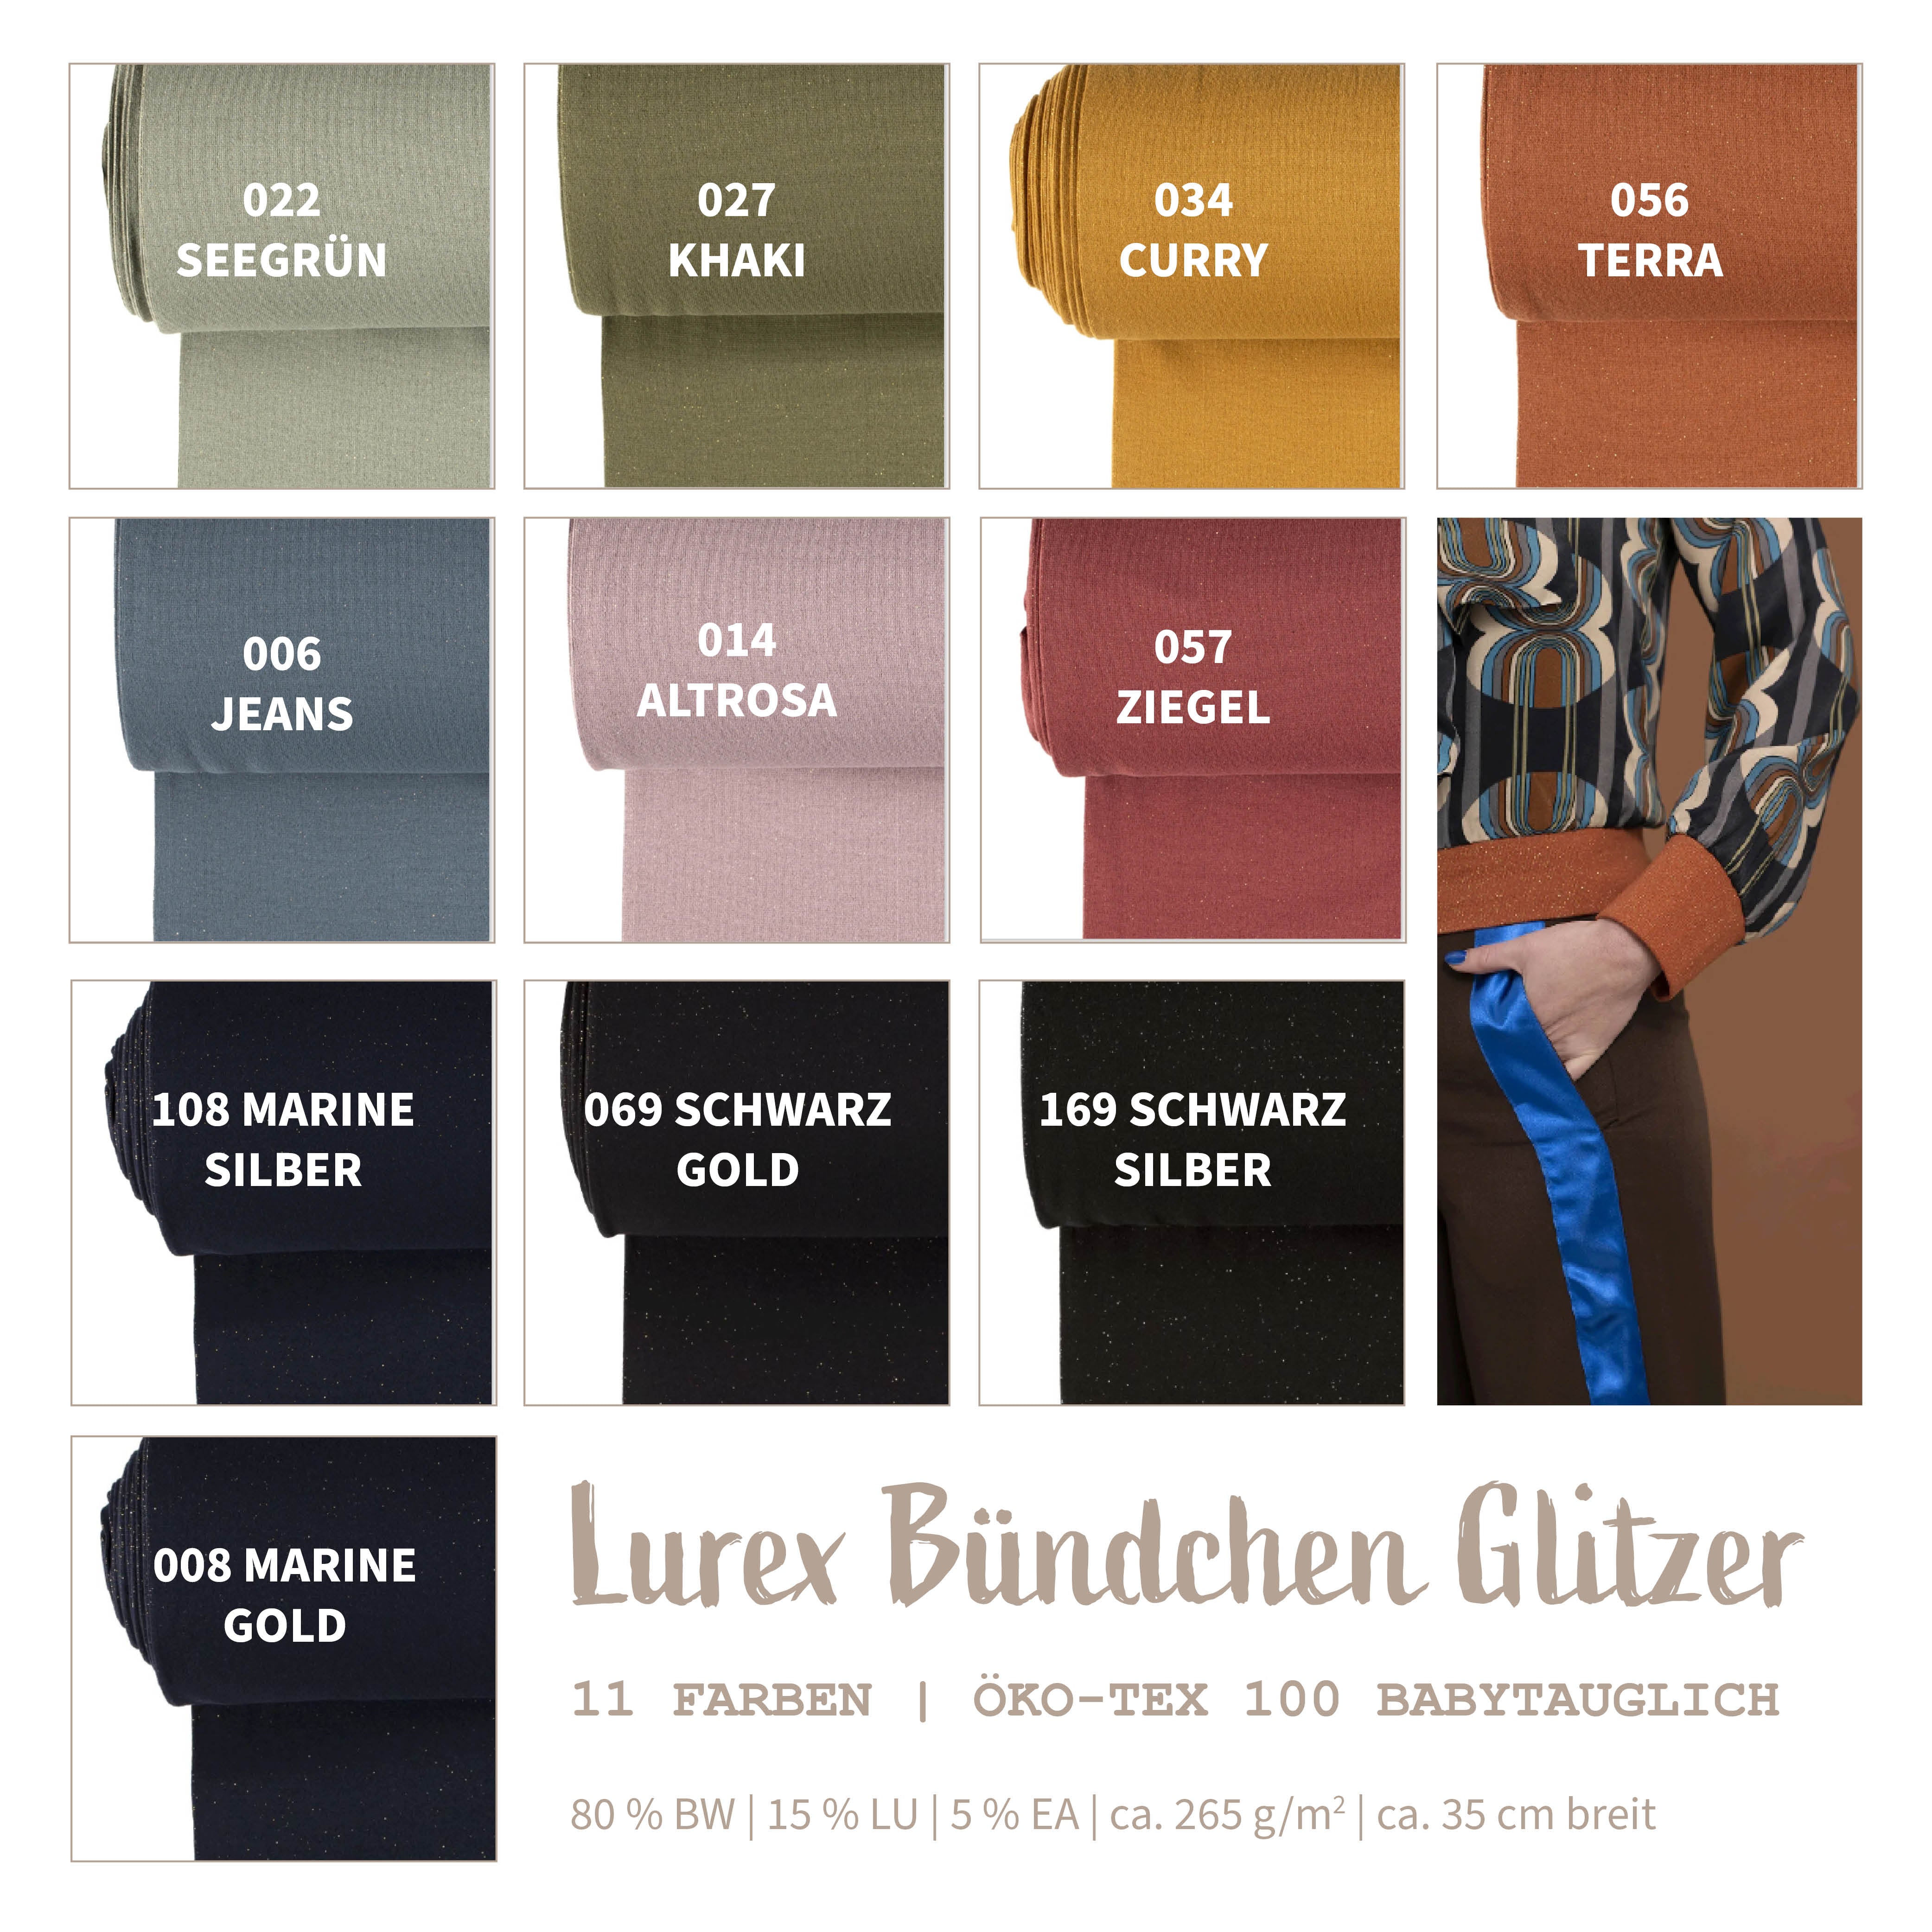 Cuffs with lurex glitter * From 25 cm